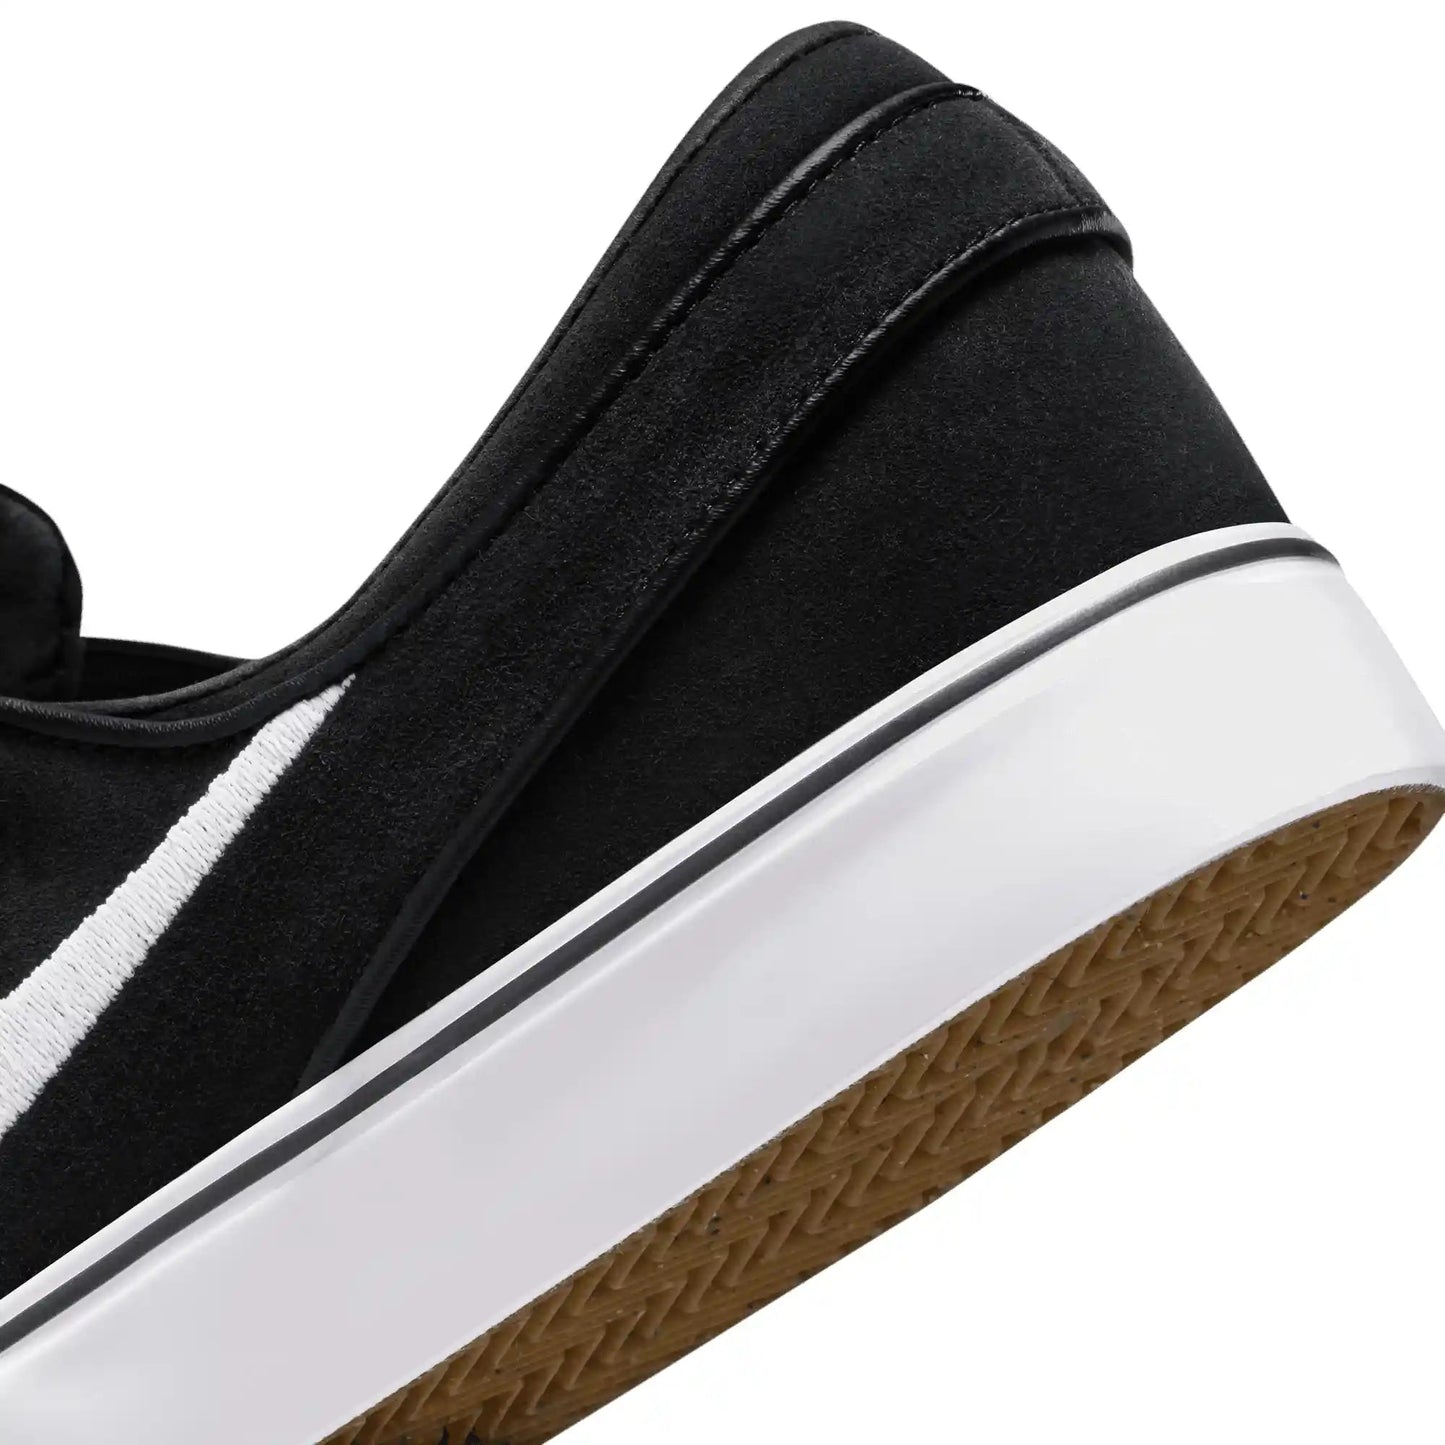 Nike SB Janoski+ Slip, black/white-black-black - Tiki Room Skateboards - 11